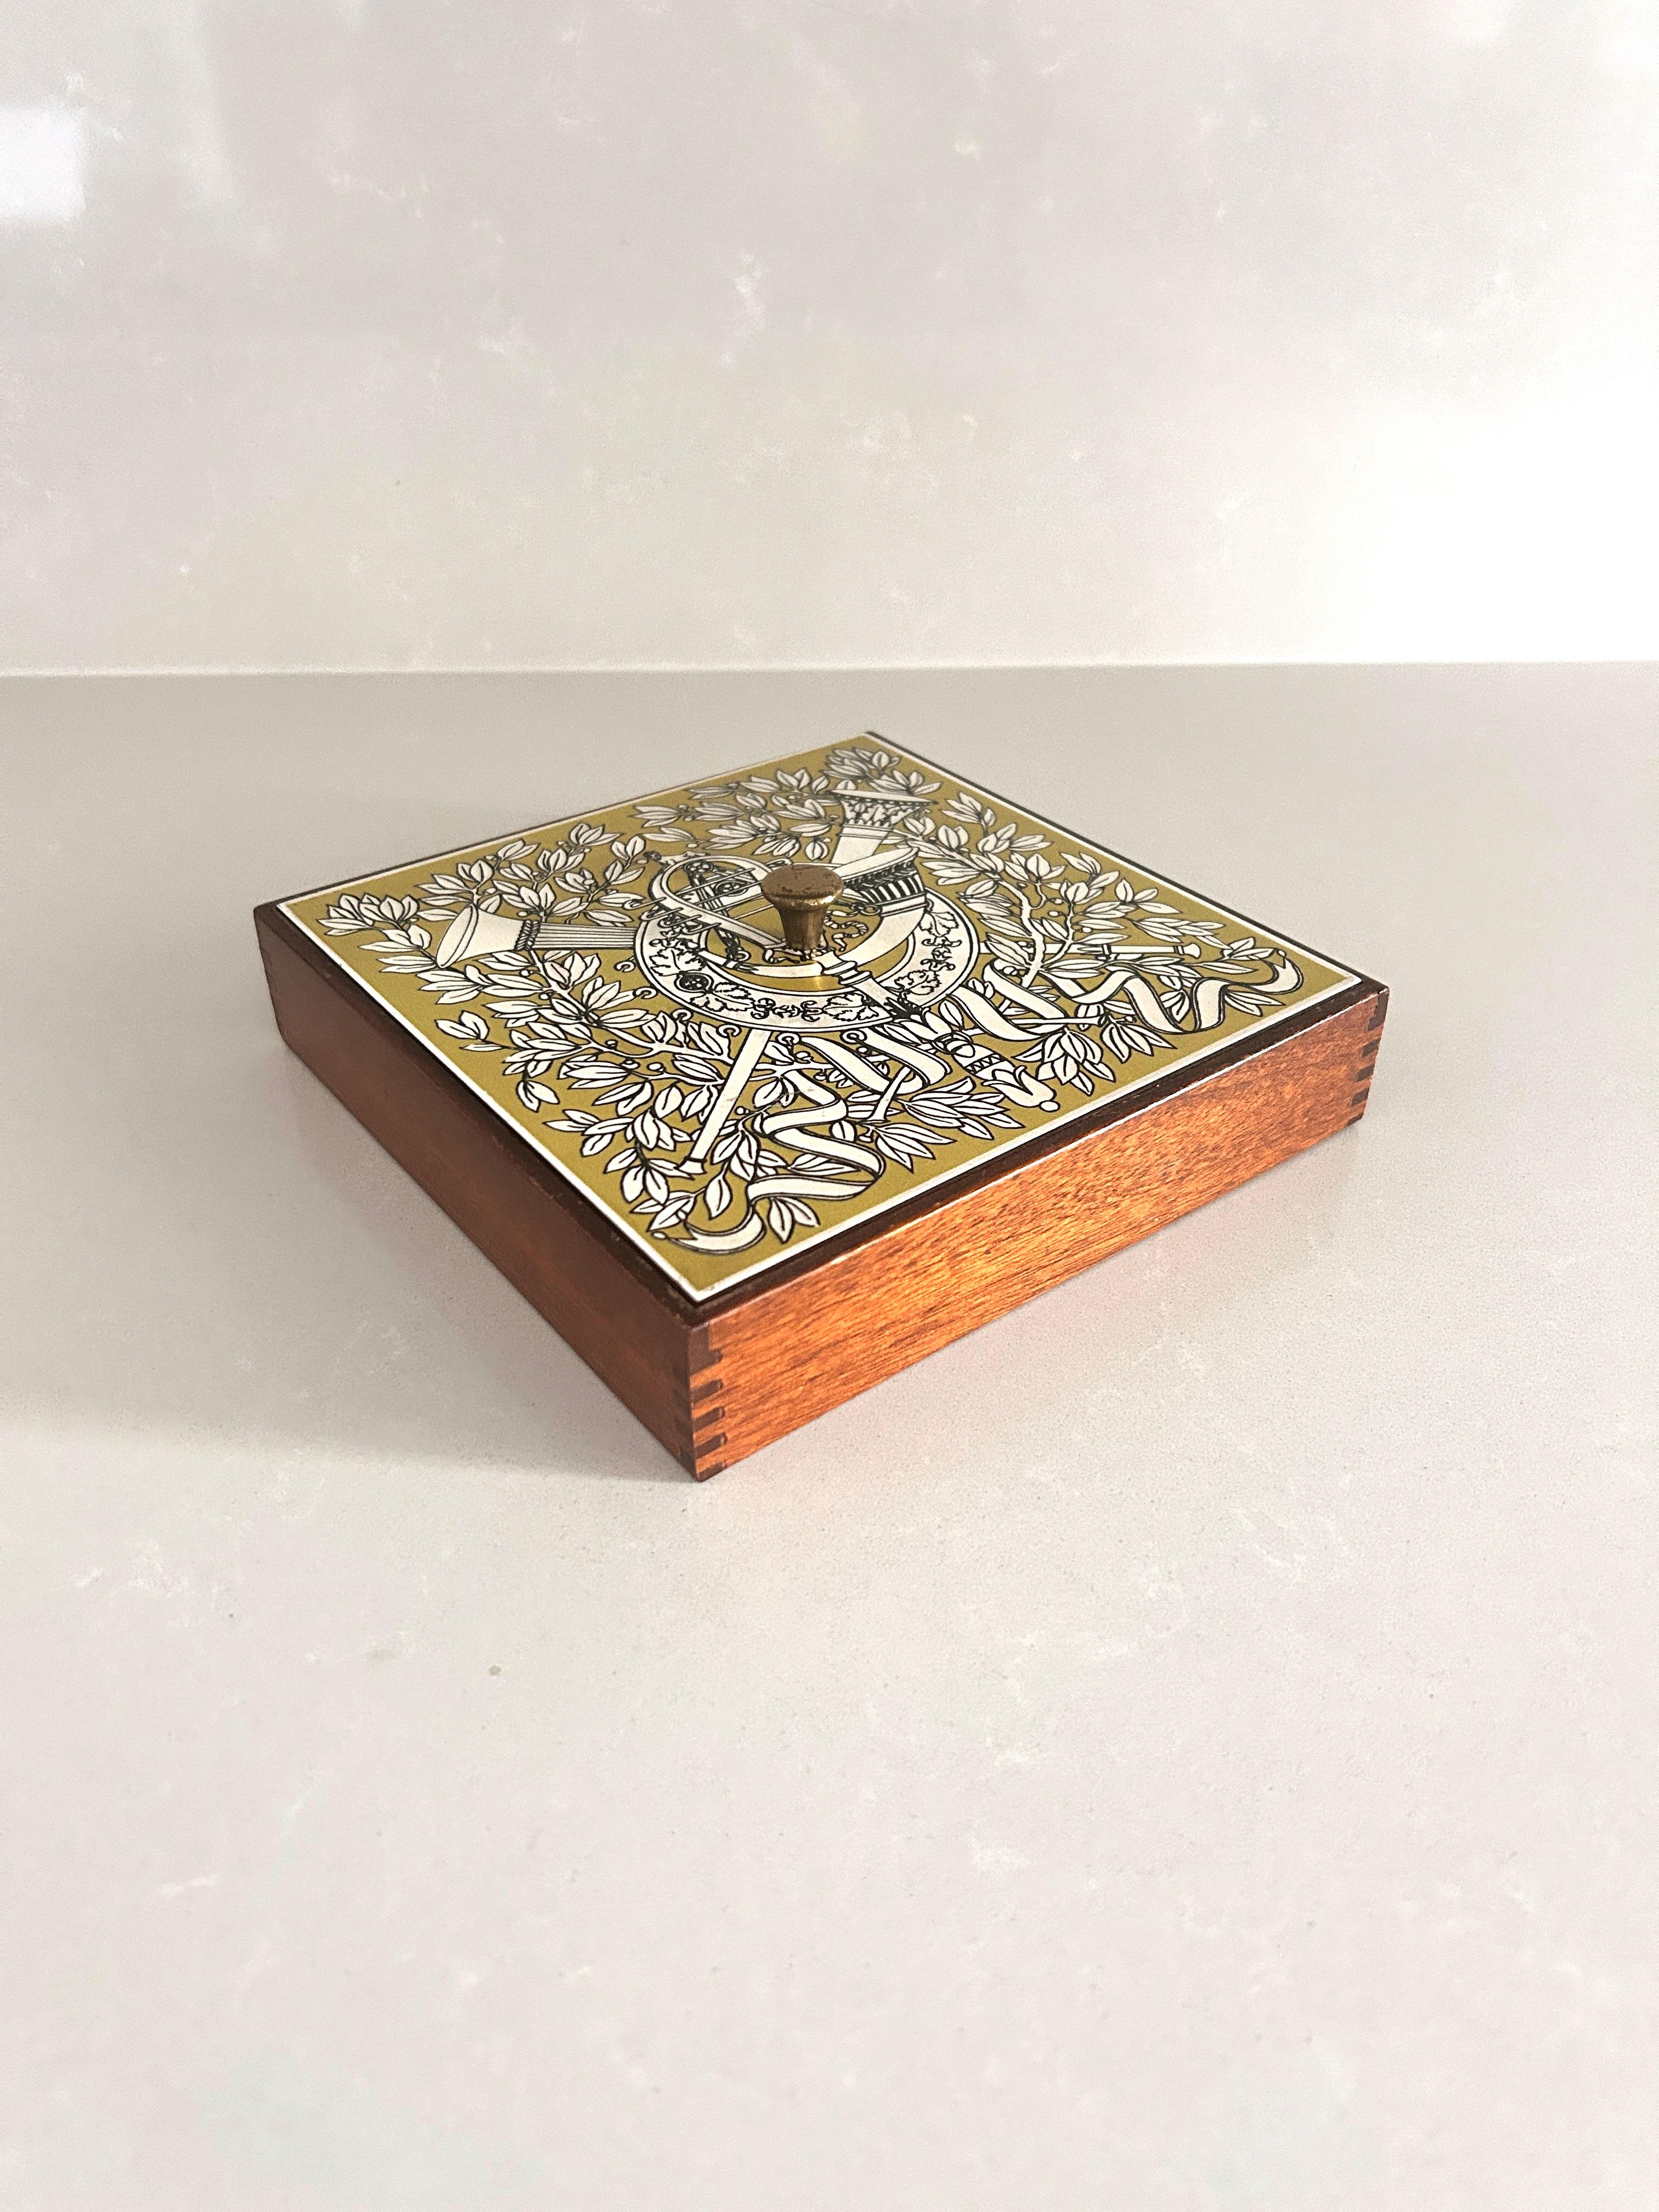 Kleine und seltene Schachtel signiert Piero Fornasetti, Fornasetti Mailand, 1960er Jahre

Klassische Dekoration im Siebdruck.
Nützlich als Taschenentleerer  